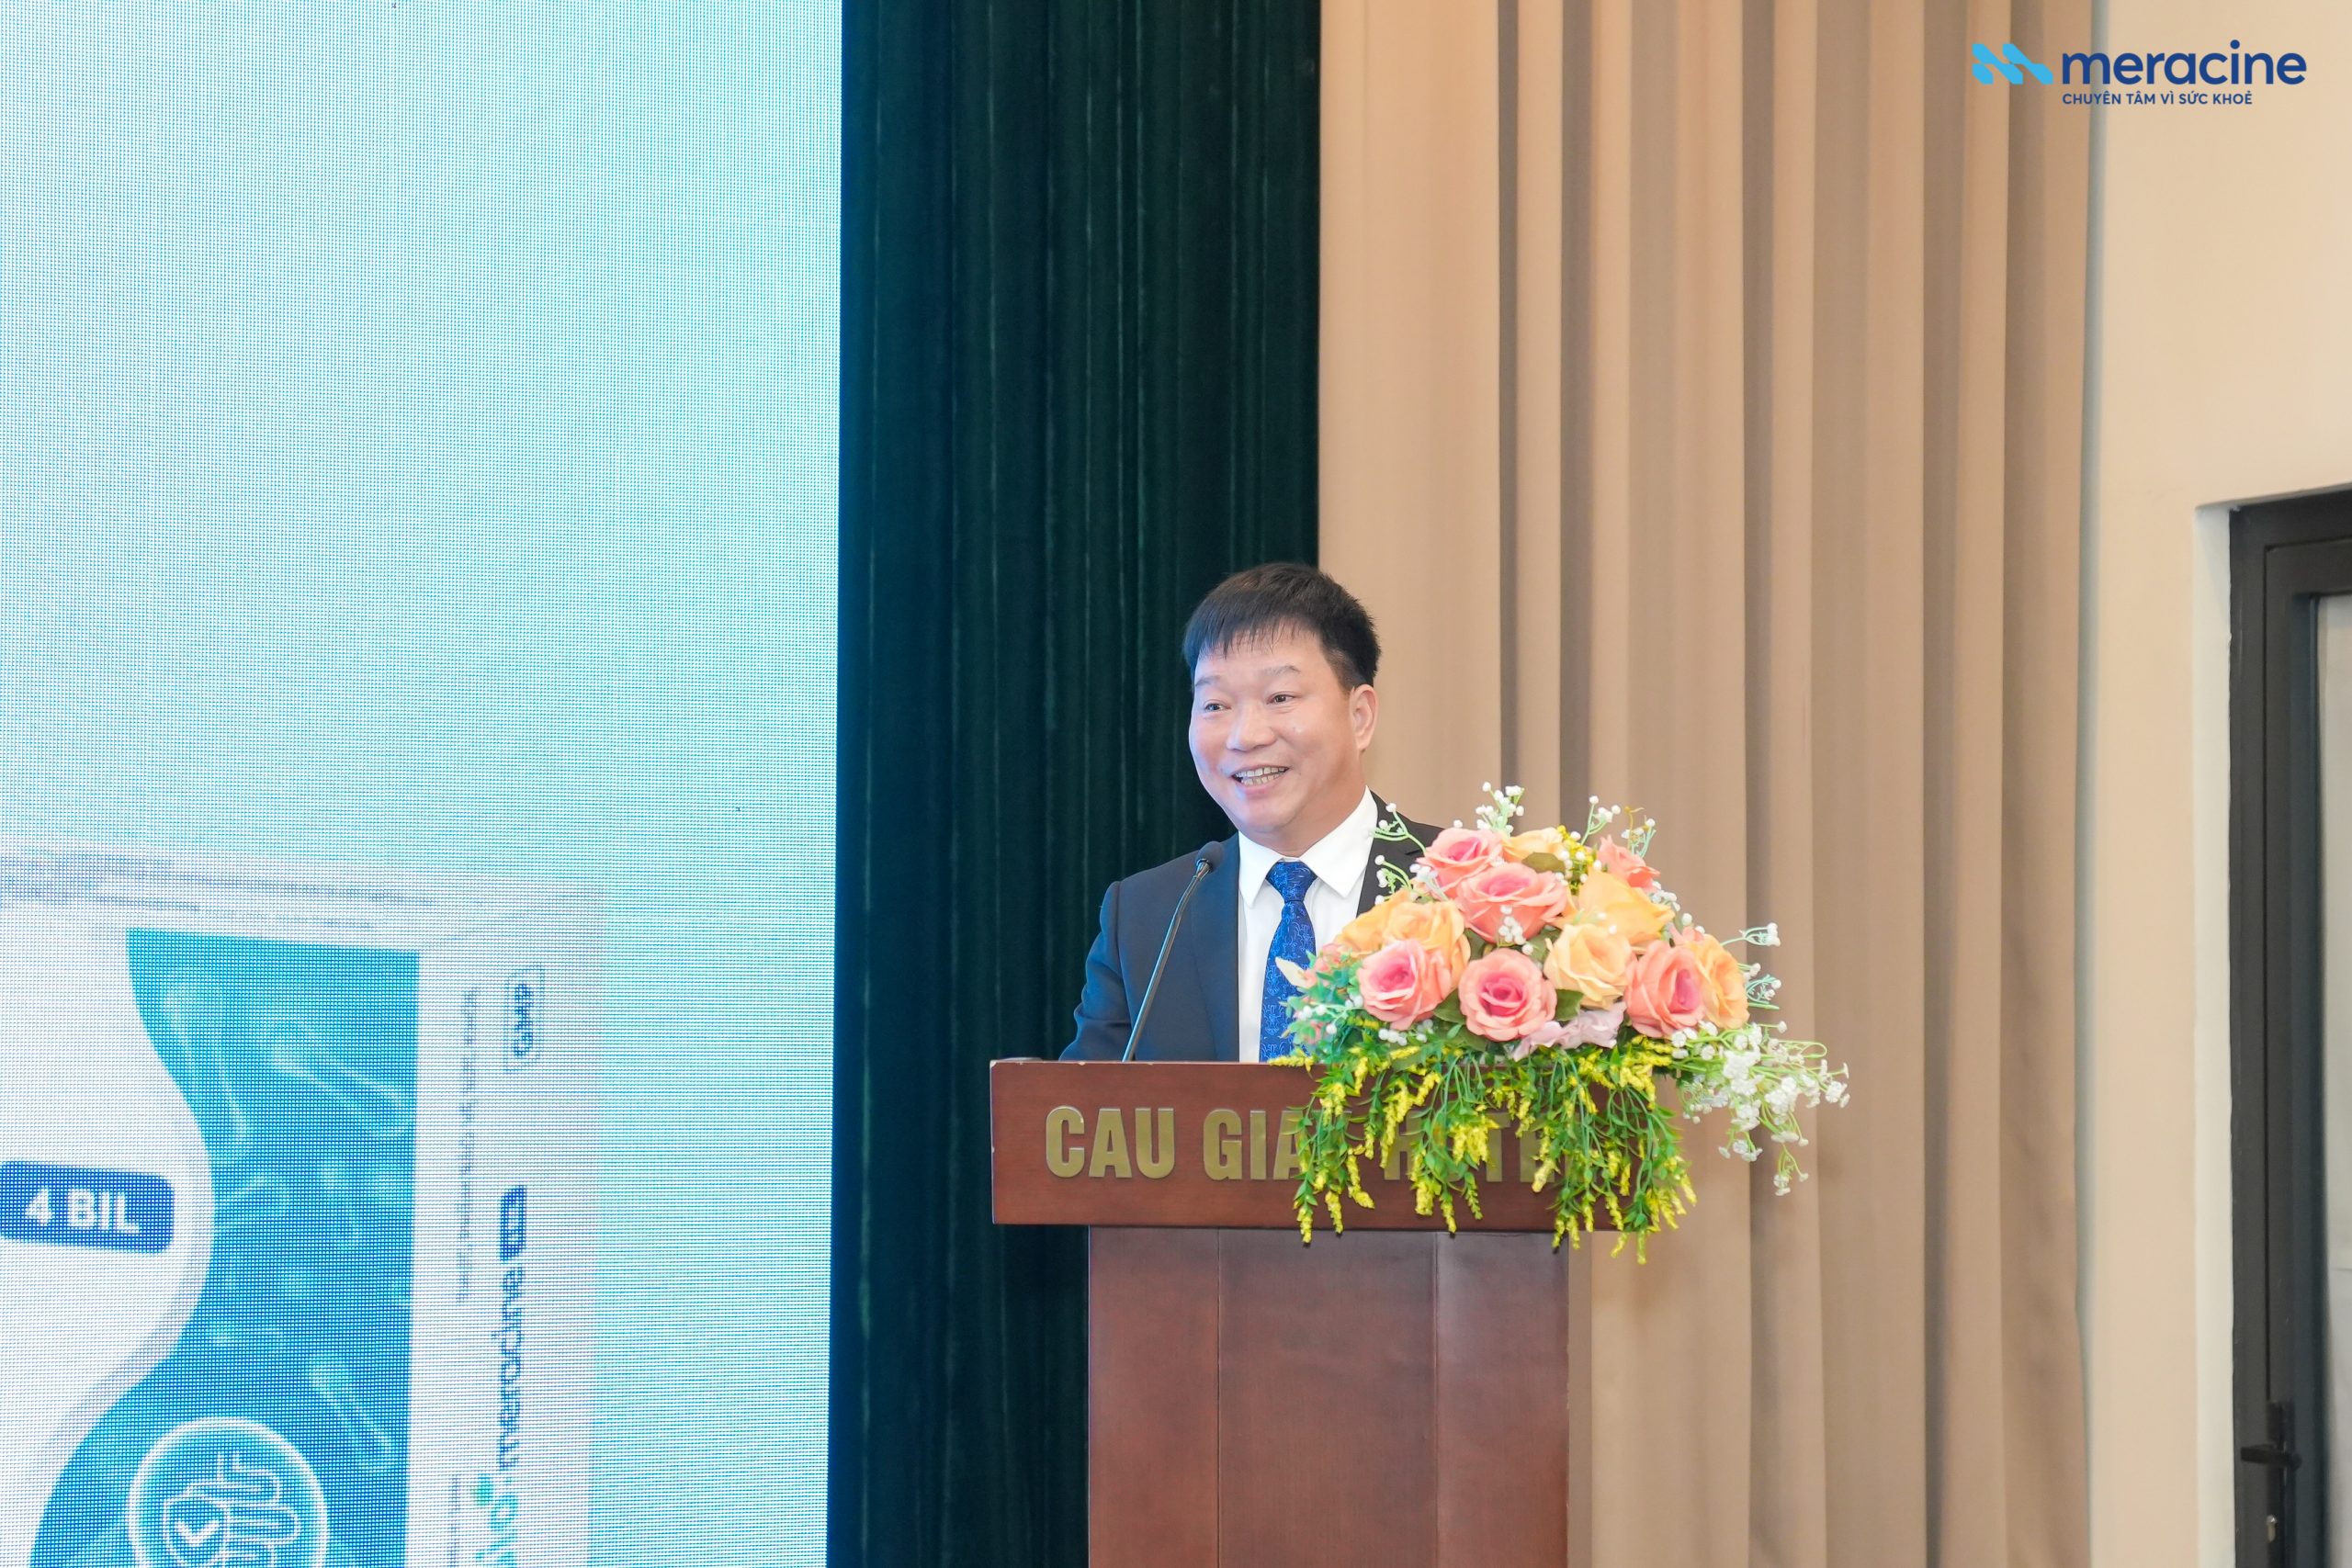 Ông Nguyễn Đăng Bẩy - TGĐ Dược phẩm Meracine công bố sản phẩm men ống vi sinh Bio-meracine mới, chăm sóc sức khỏe đường ruột mọi nhà